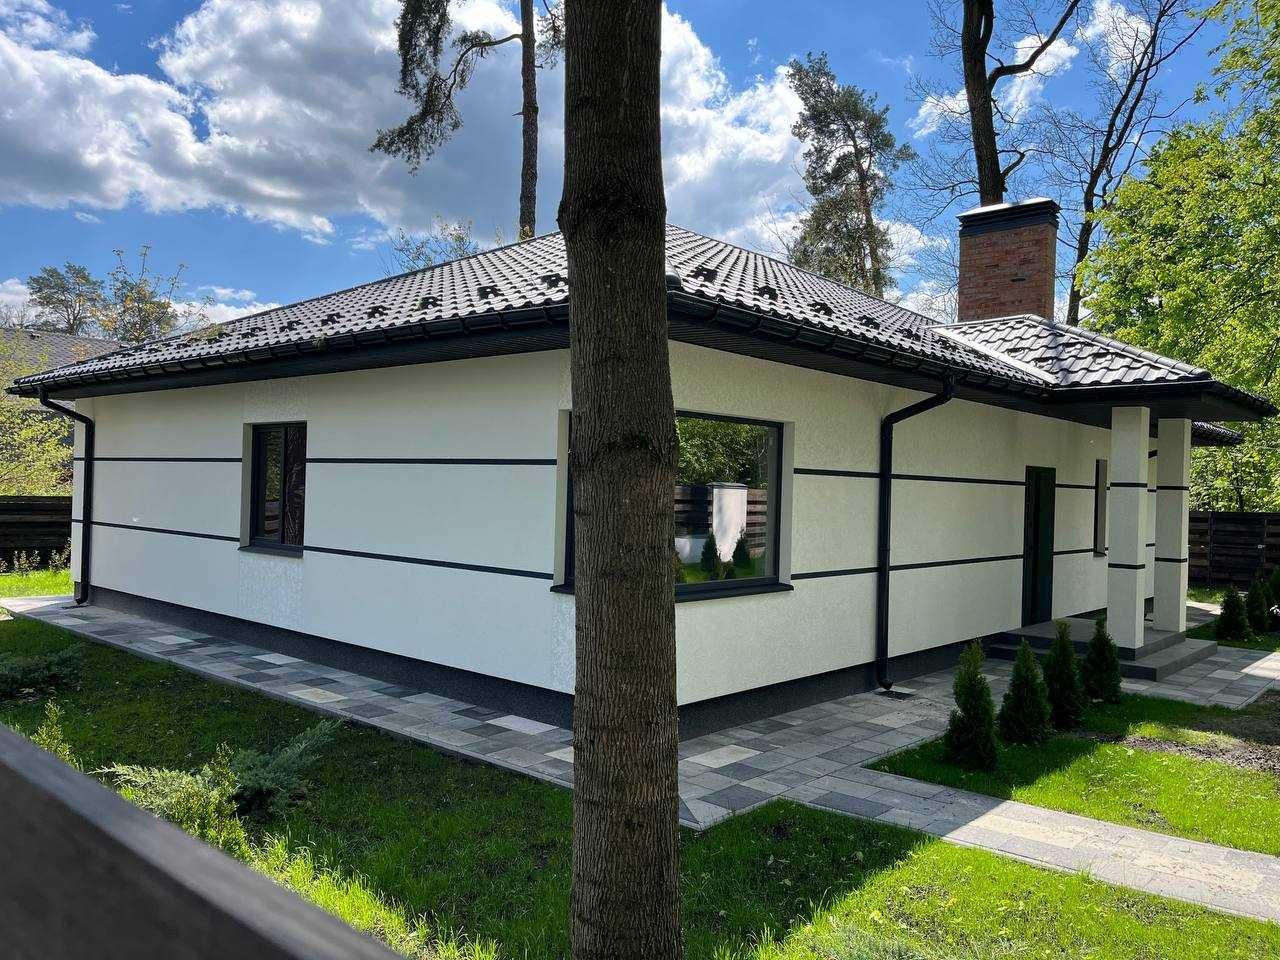 Будинок для сім'ї біля Києва. 150м2  Держпрограми, є-оселя. 135900$.